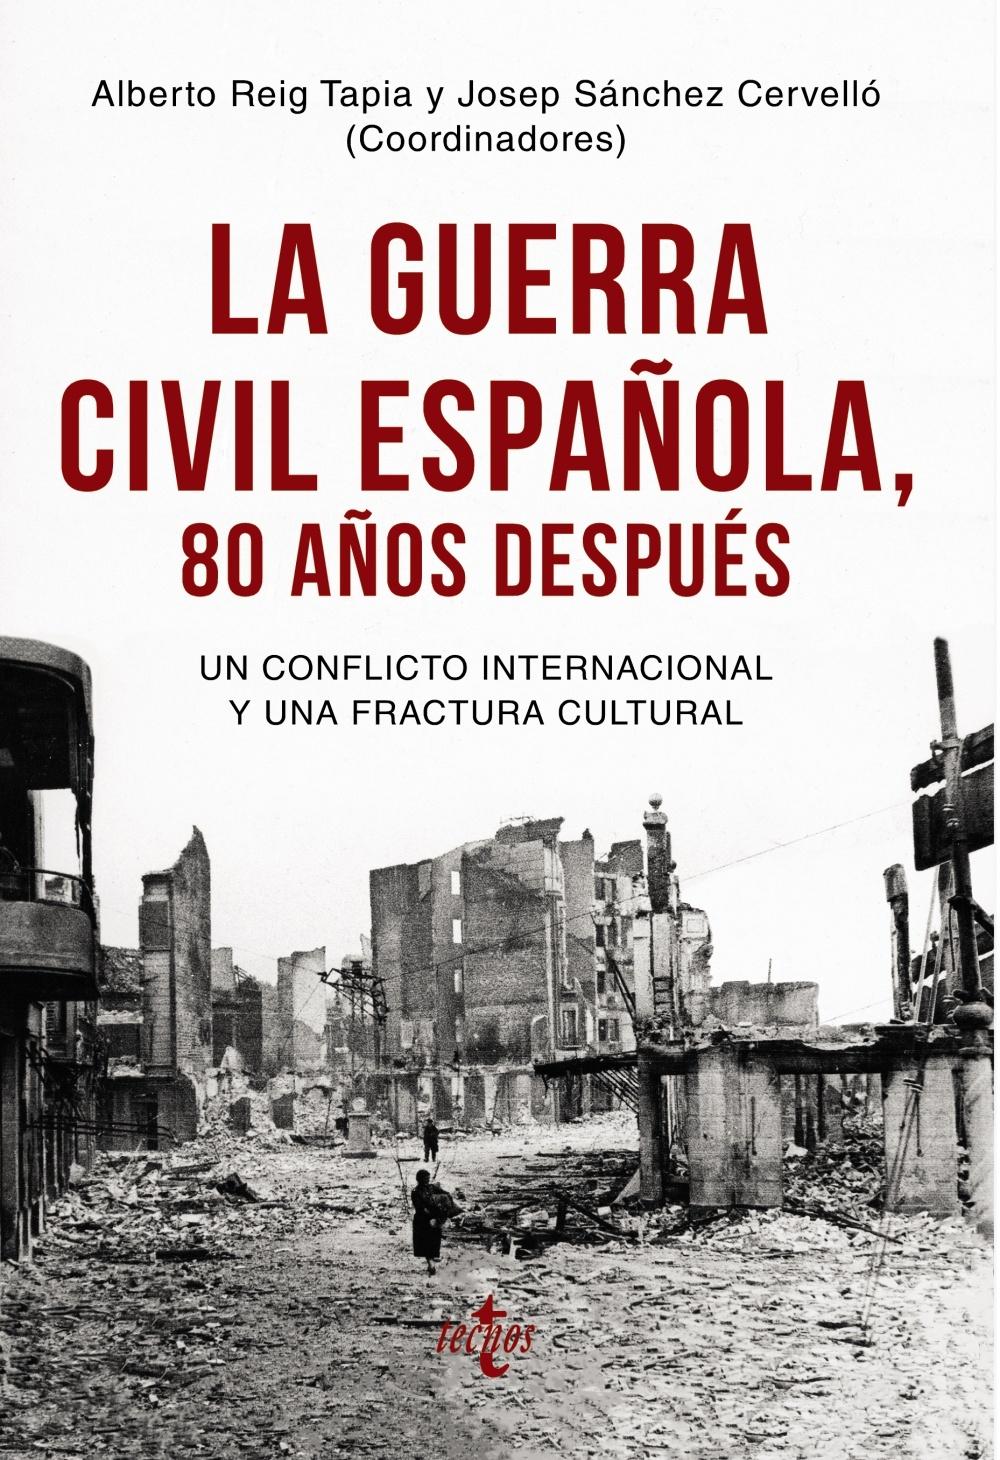 La Guerra Civil Española 80 Años Después "Un Conflicto Internacional y una Fractura Cultural"